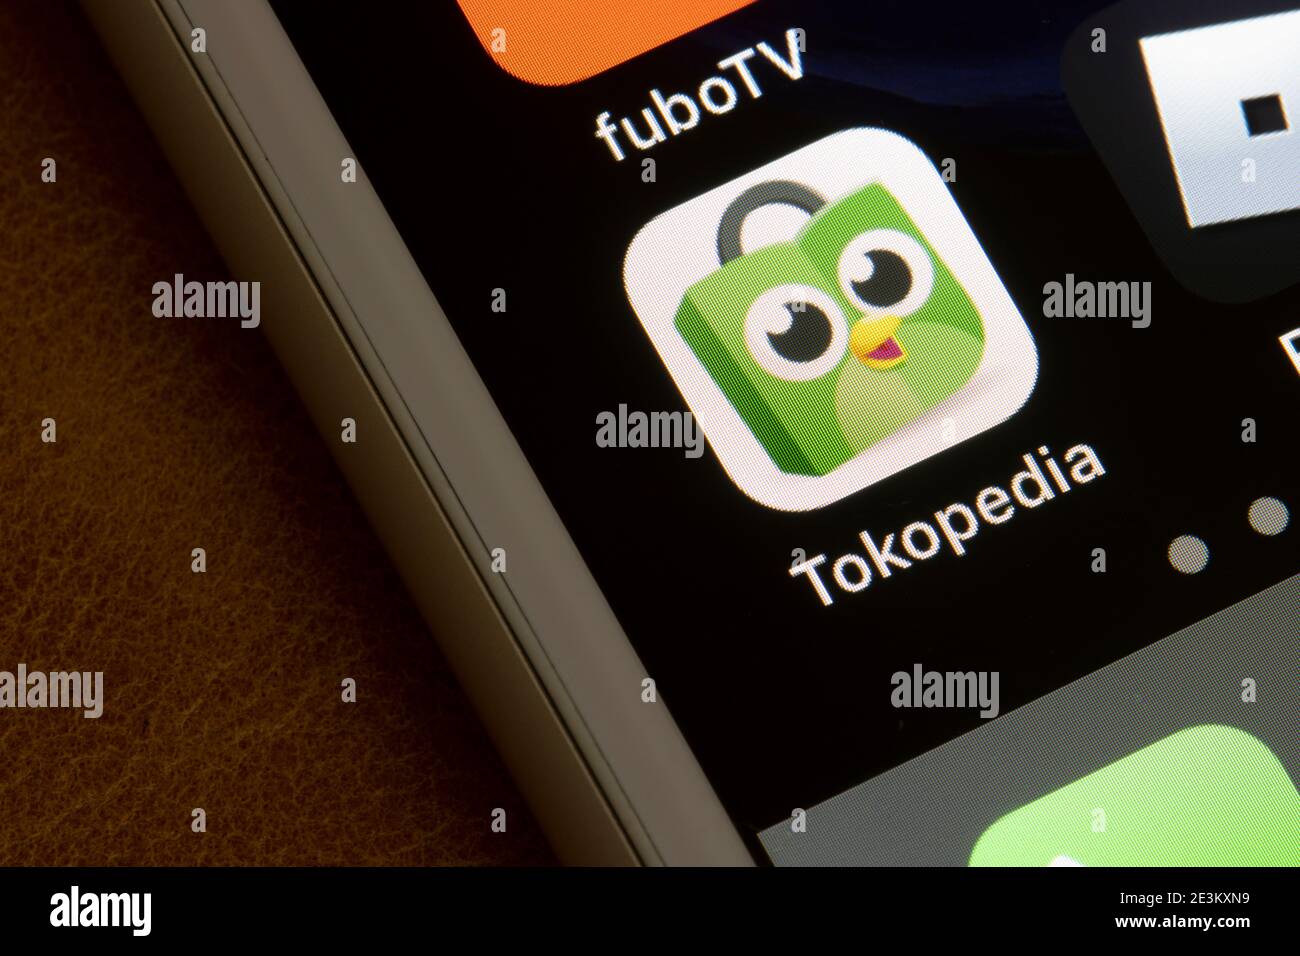 L'icône de l'application mobile Tokopedia apparaît sur un iPhone le 19 janvier 2021. Tokopedia est une société de technologie indonésienne spécialisée dans le commerce électronique. Banque D'Images